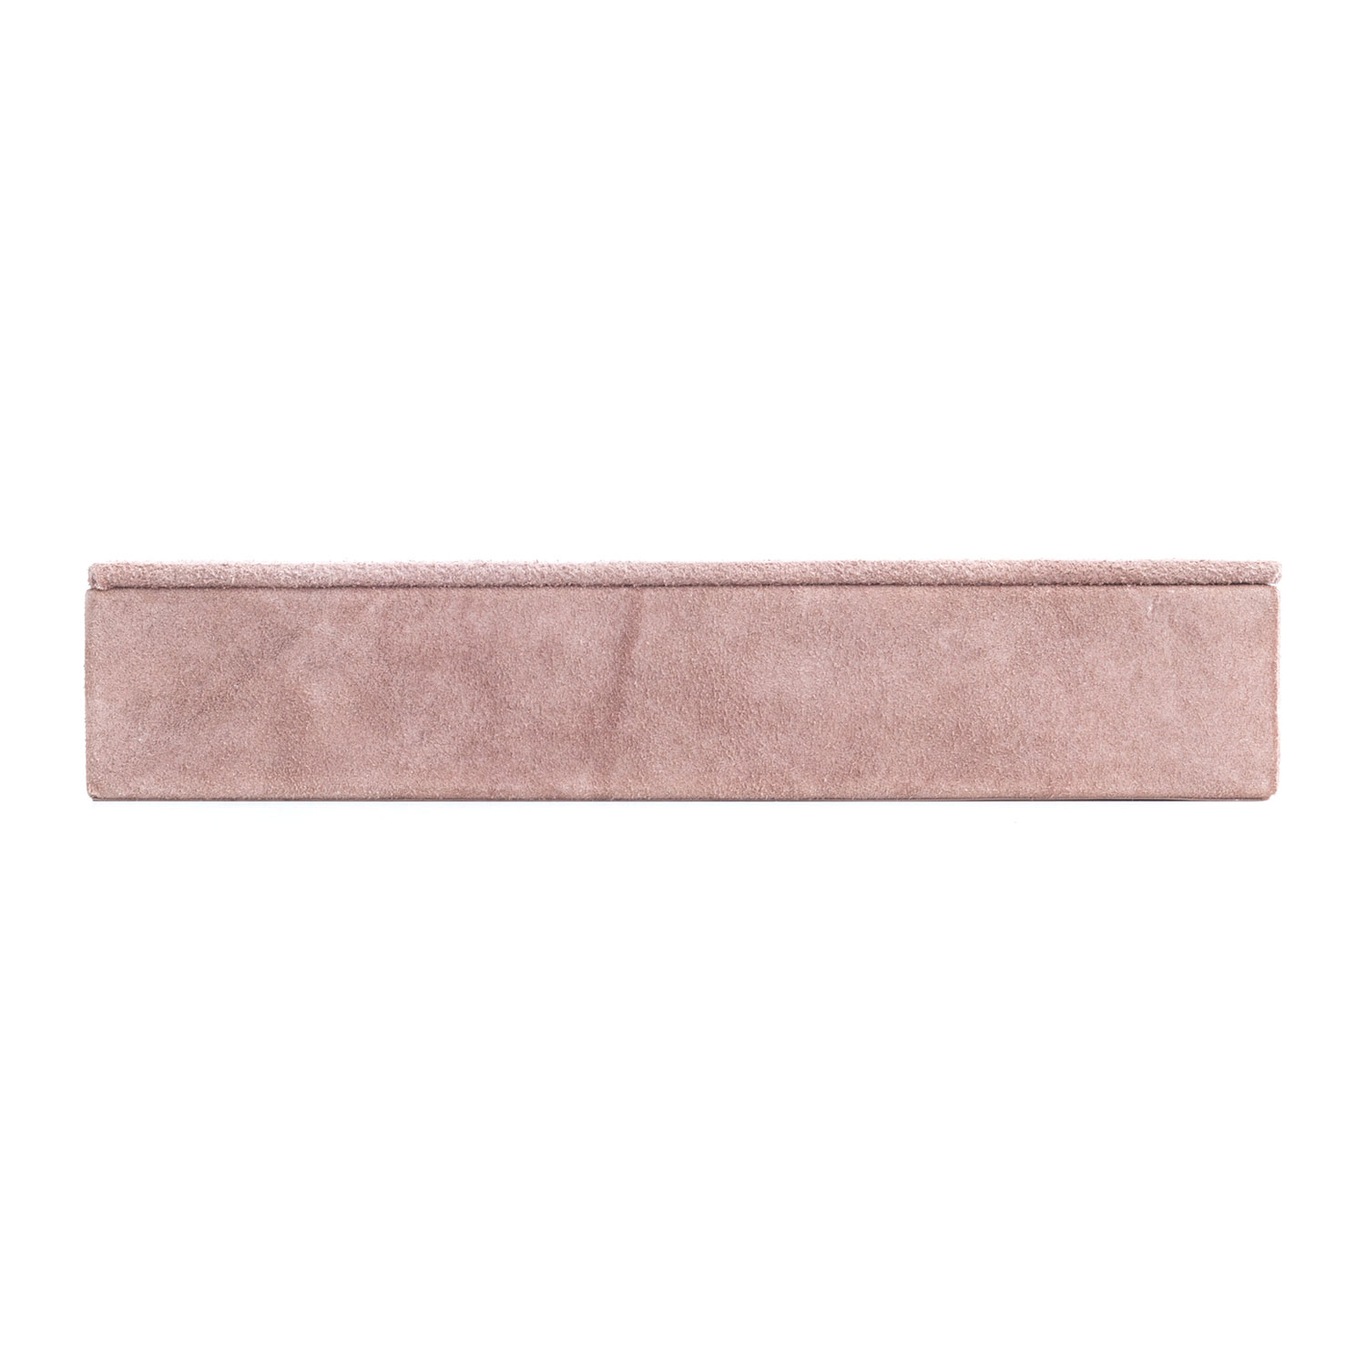 Suede Box Rectangular, Pale Pink